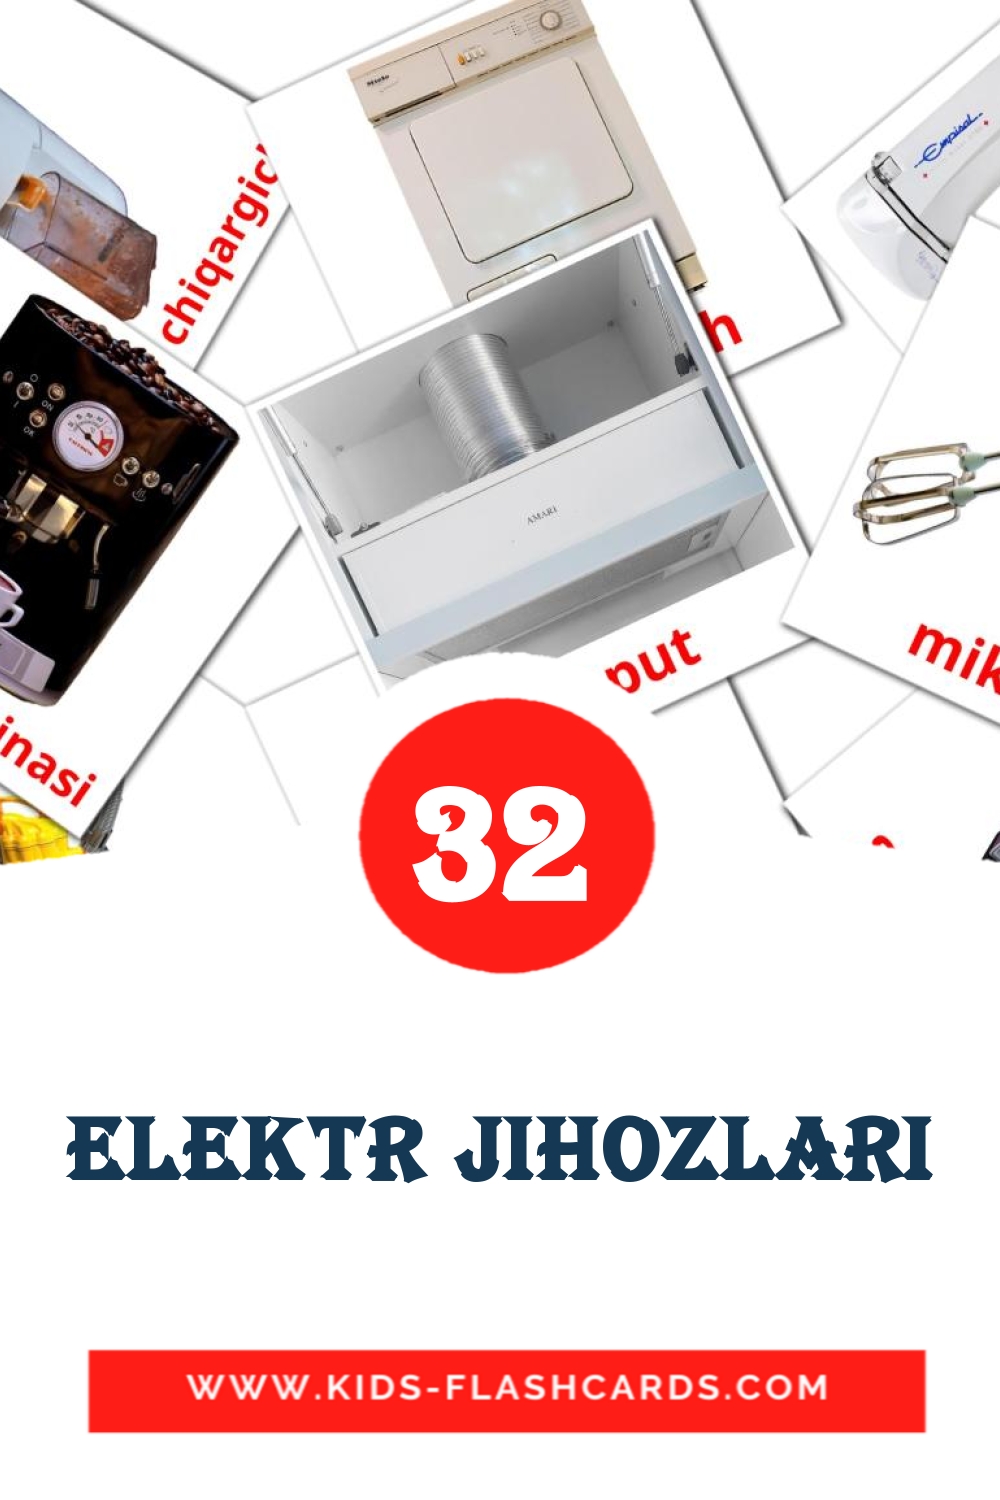 32 Elektr jihozlari Bildkarten für den Kindergarten auf Usbekisch